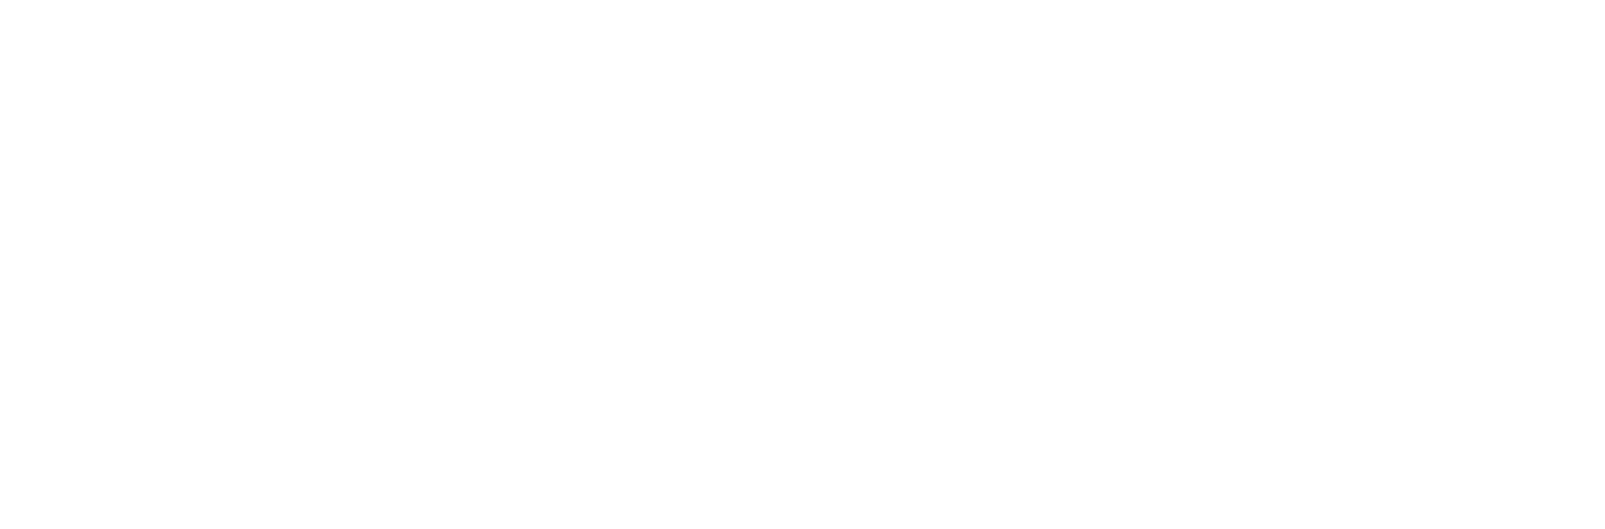 Cyxtera Technologies logo pour fonds sombres (PNG transparent)